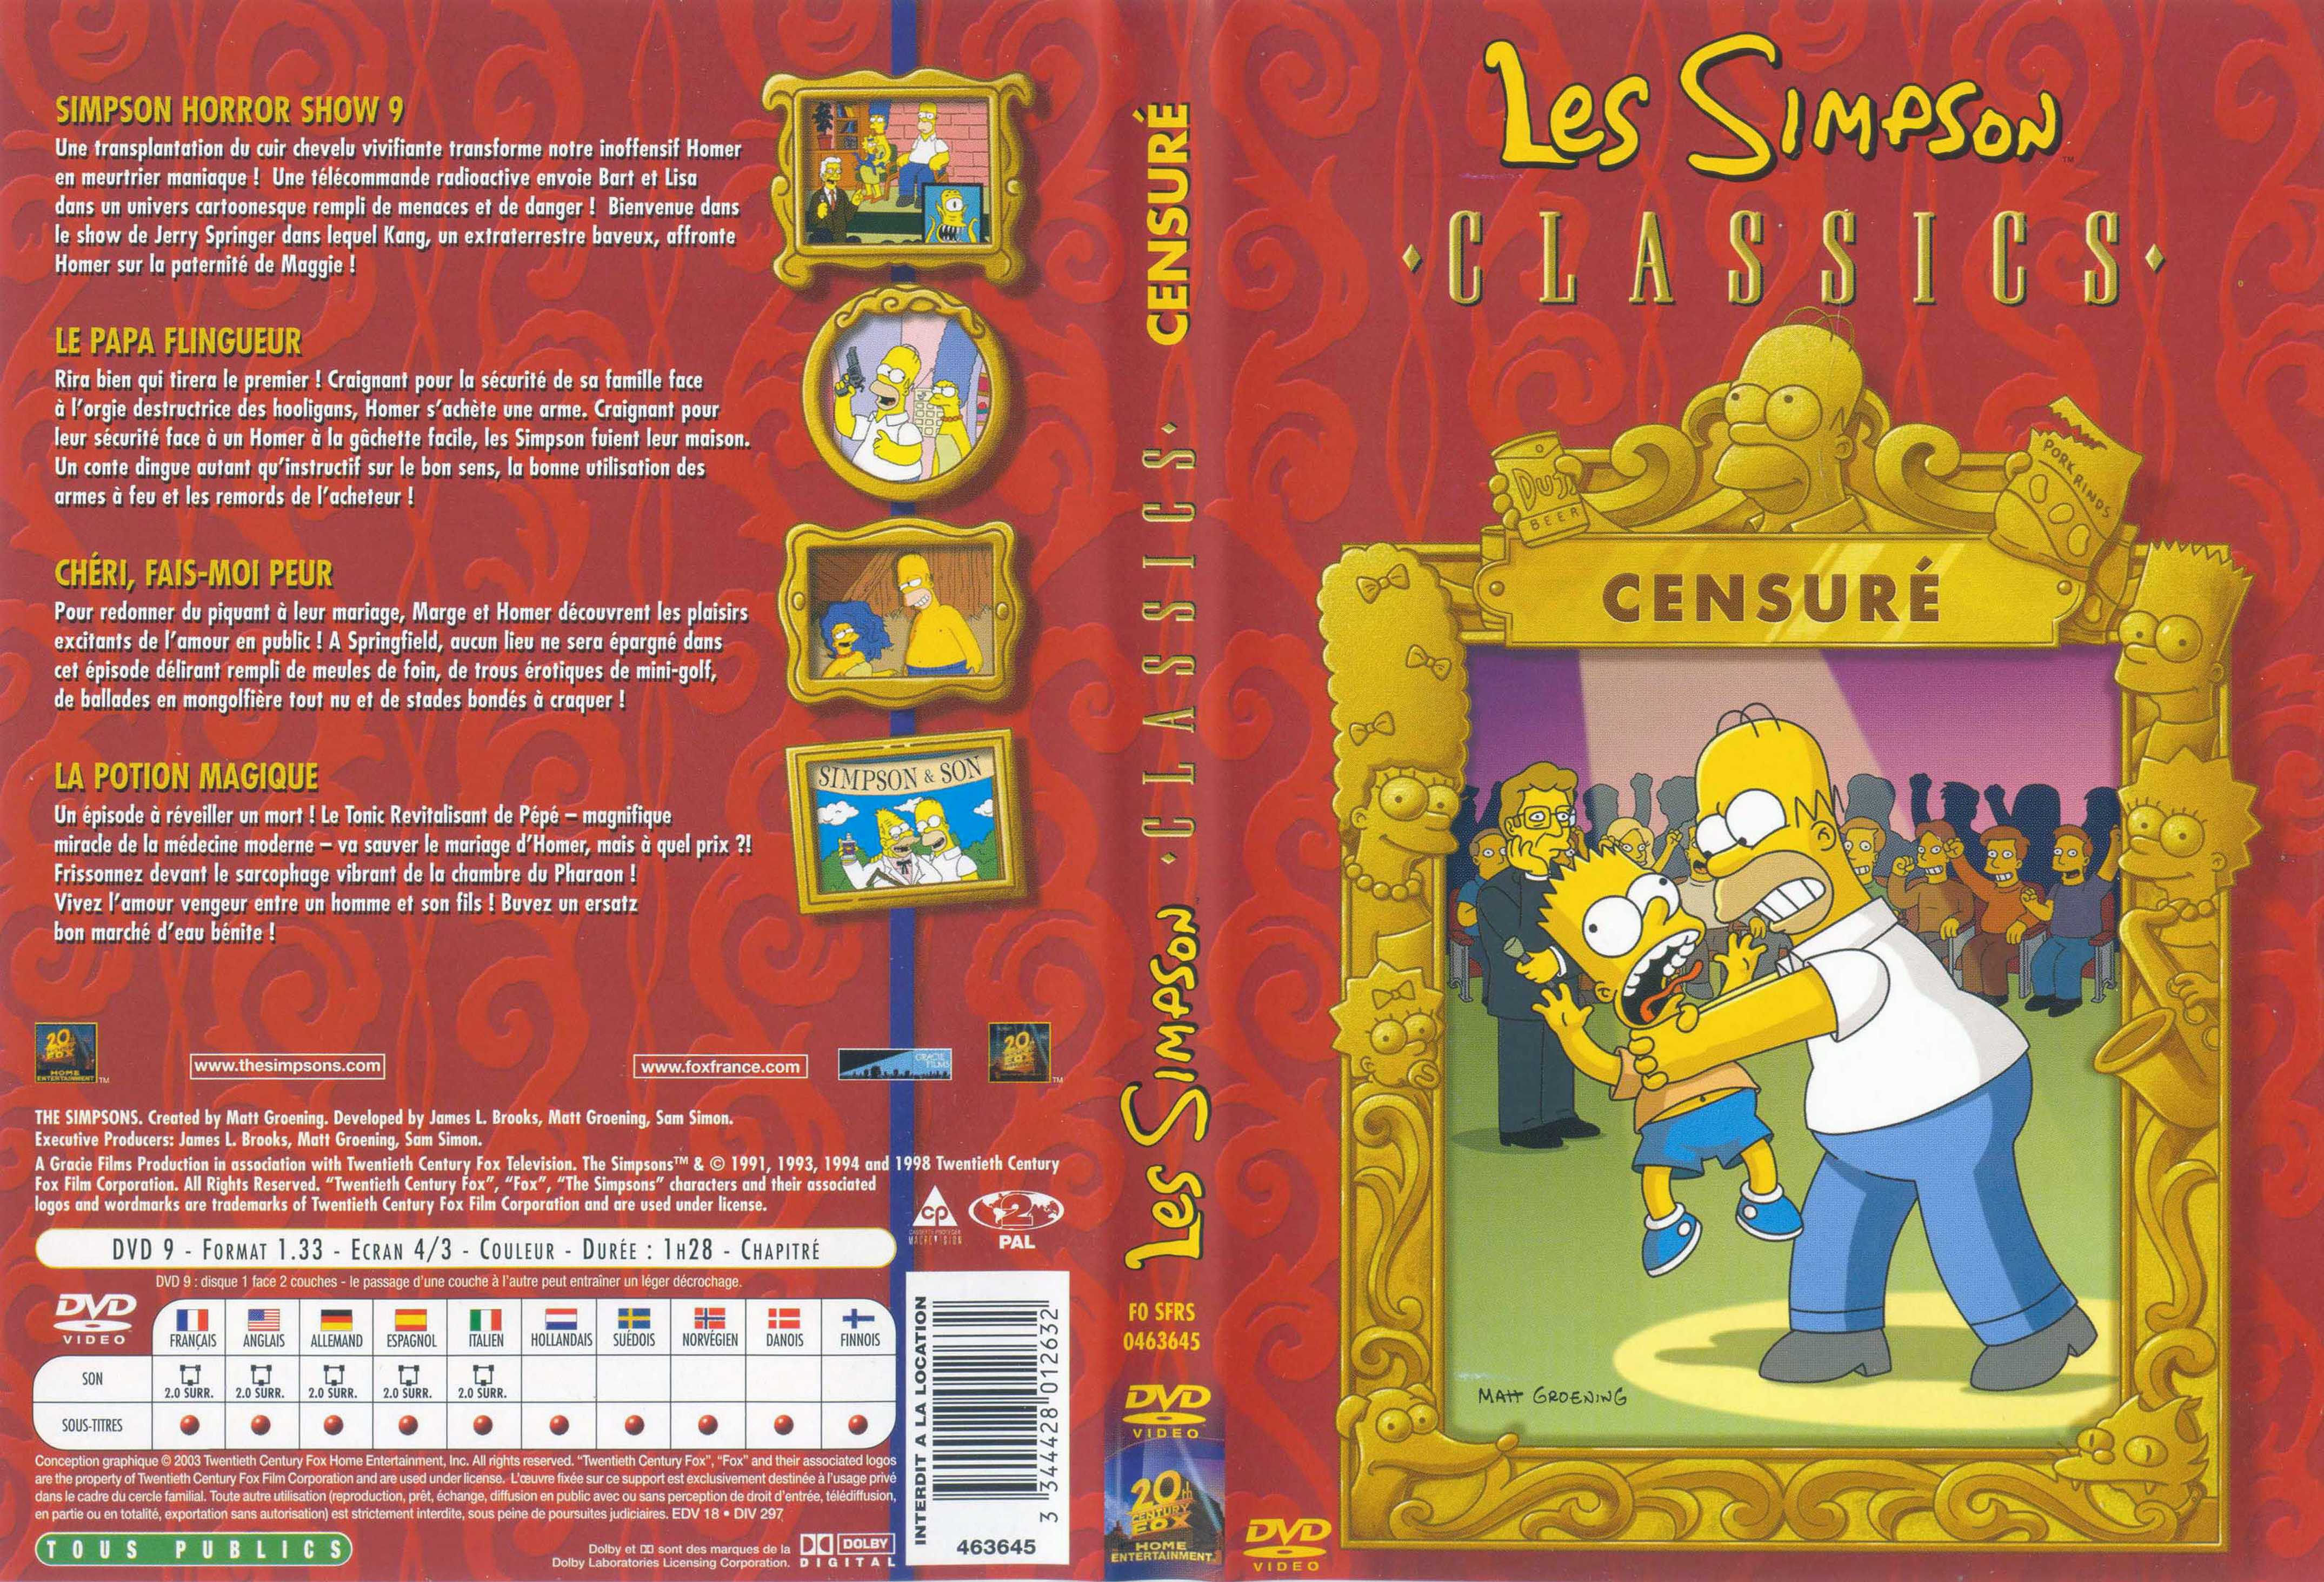 Jaquette DVD Les Simpson censur